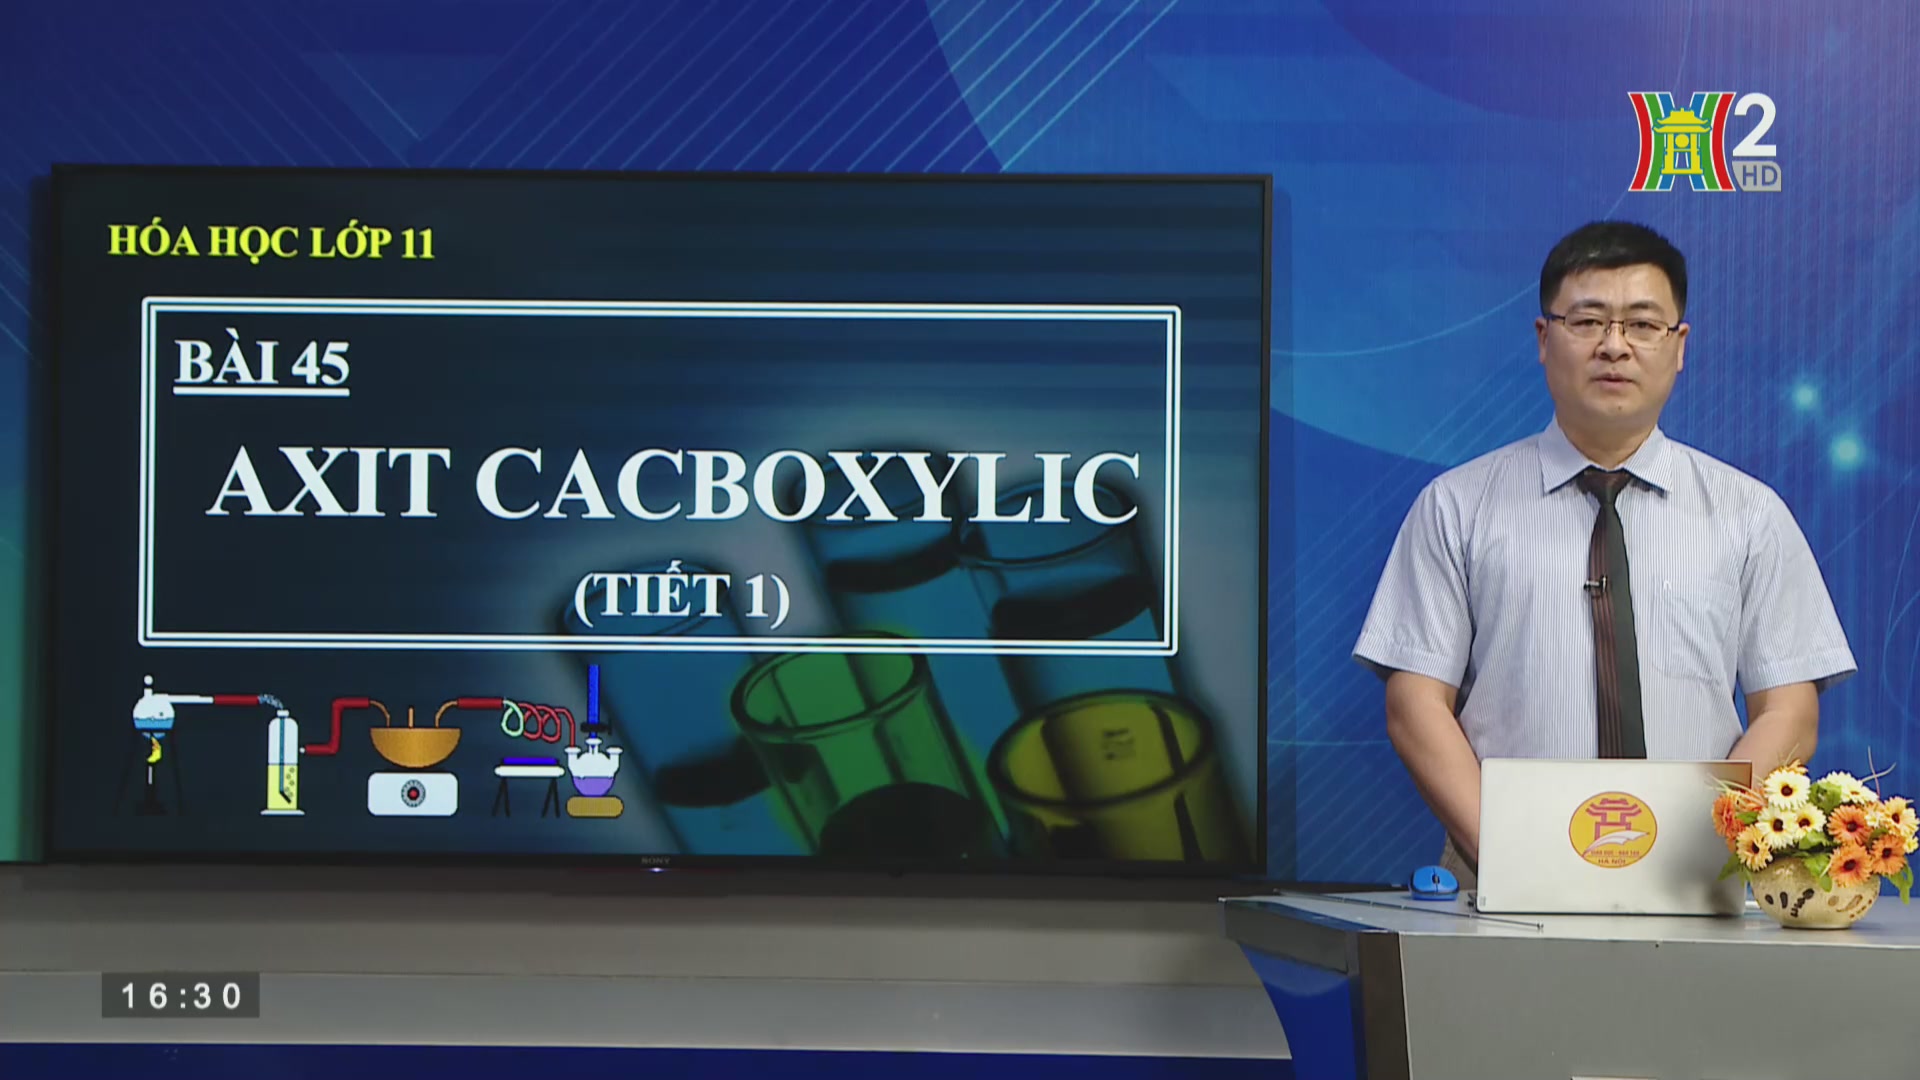 Hóa học lớp 11: Axit cacboxylic (tiết 1) (16h30 ngày 26/5/2020)